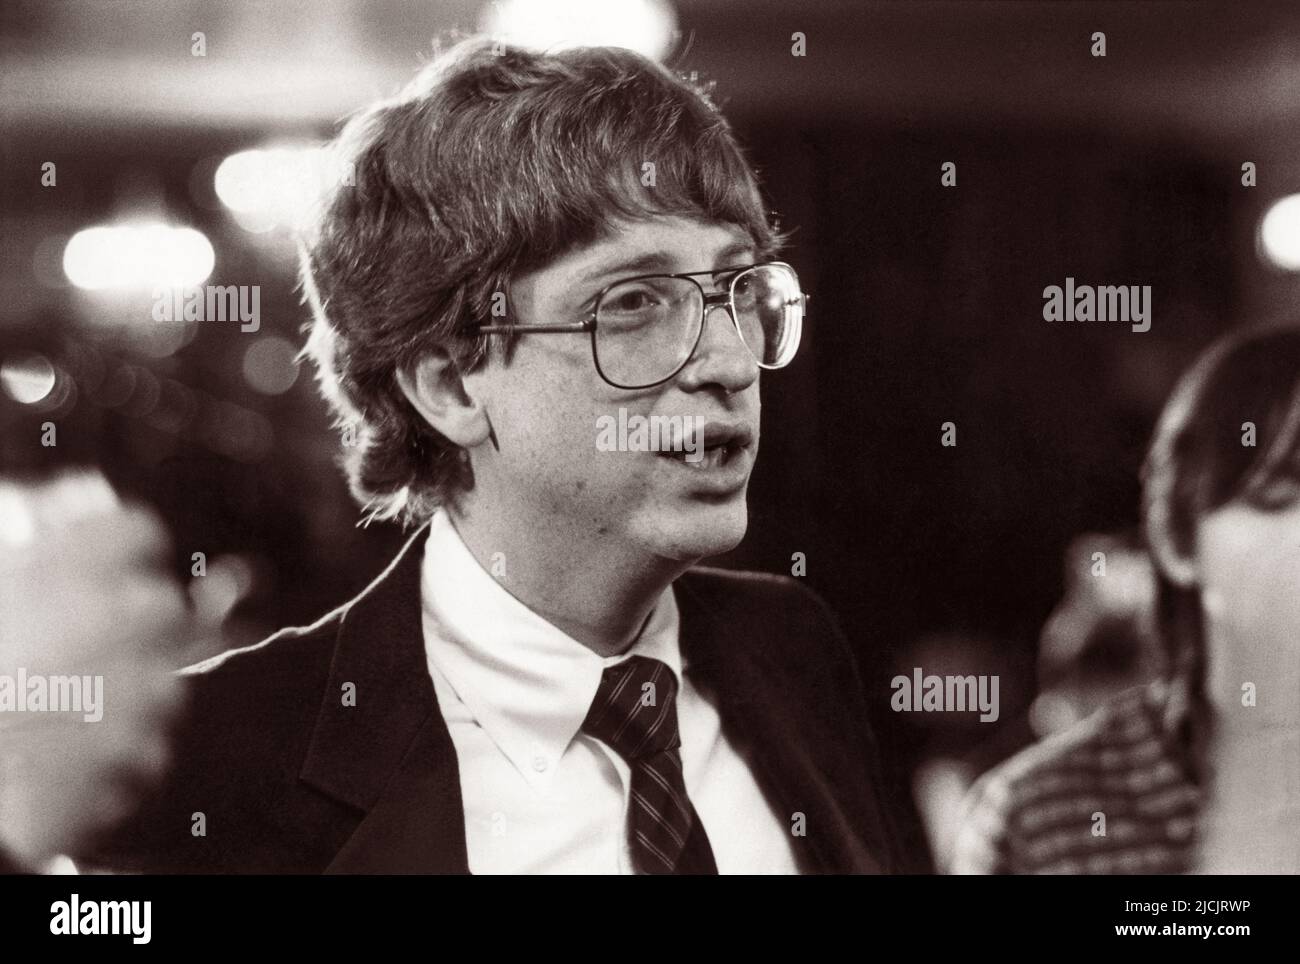 Der junge Bill Gates, Softwareentwickler, Präsident und CEO von Microsoft, im Jahr 1980s. Stockfoto